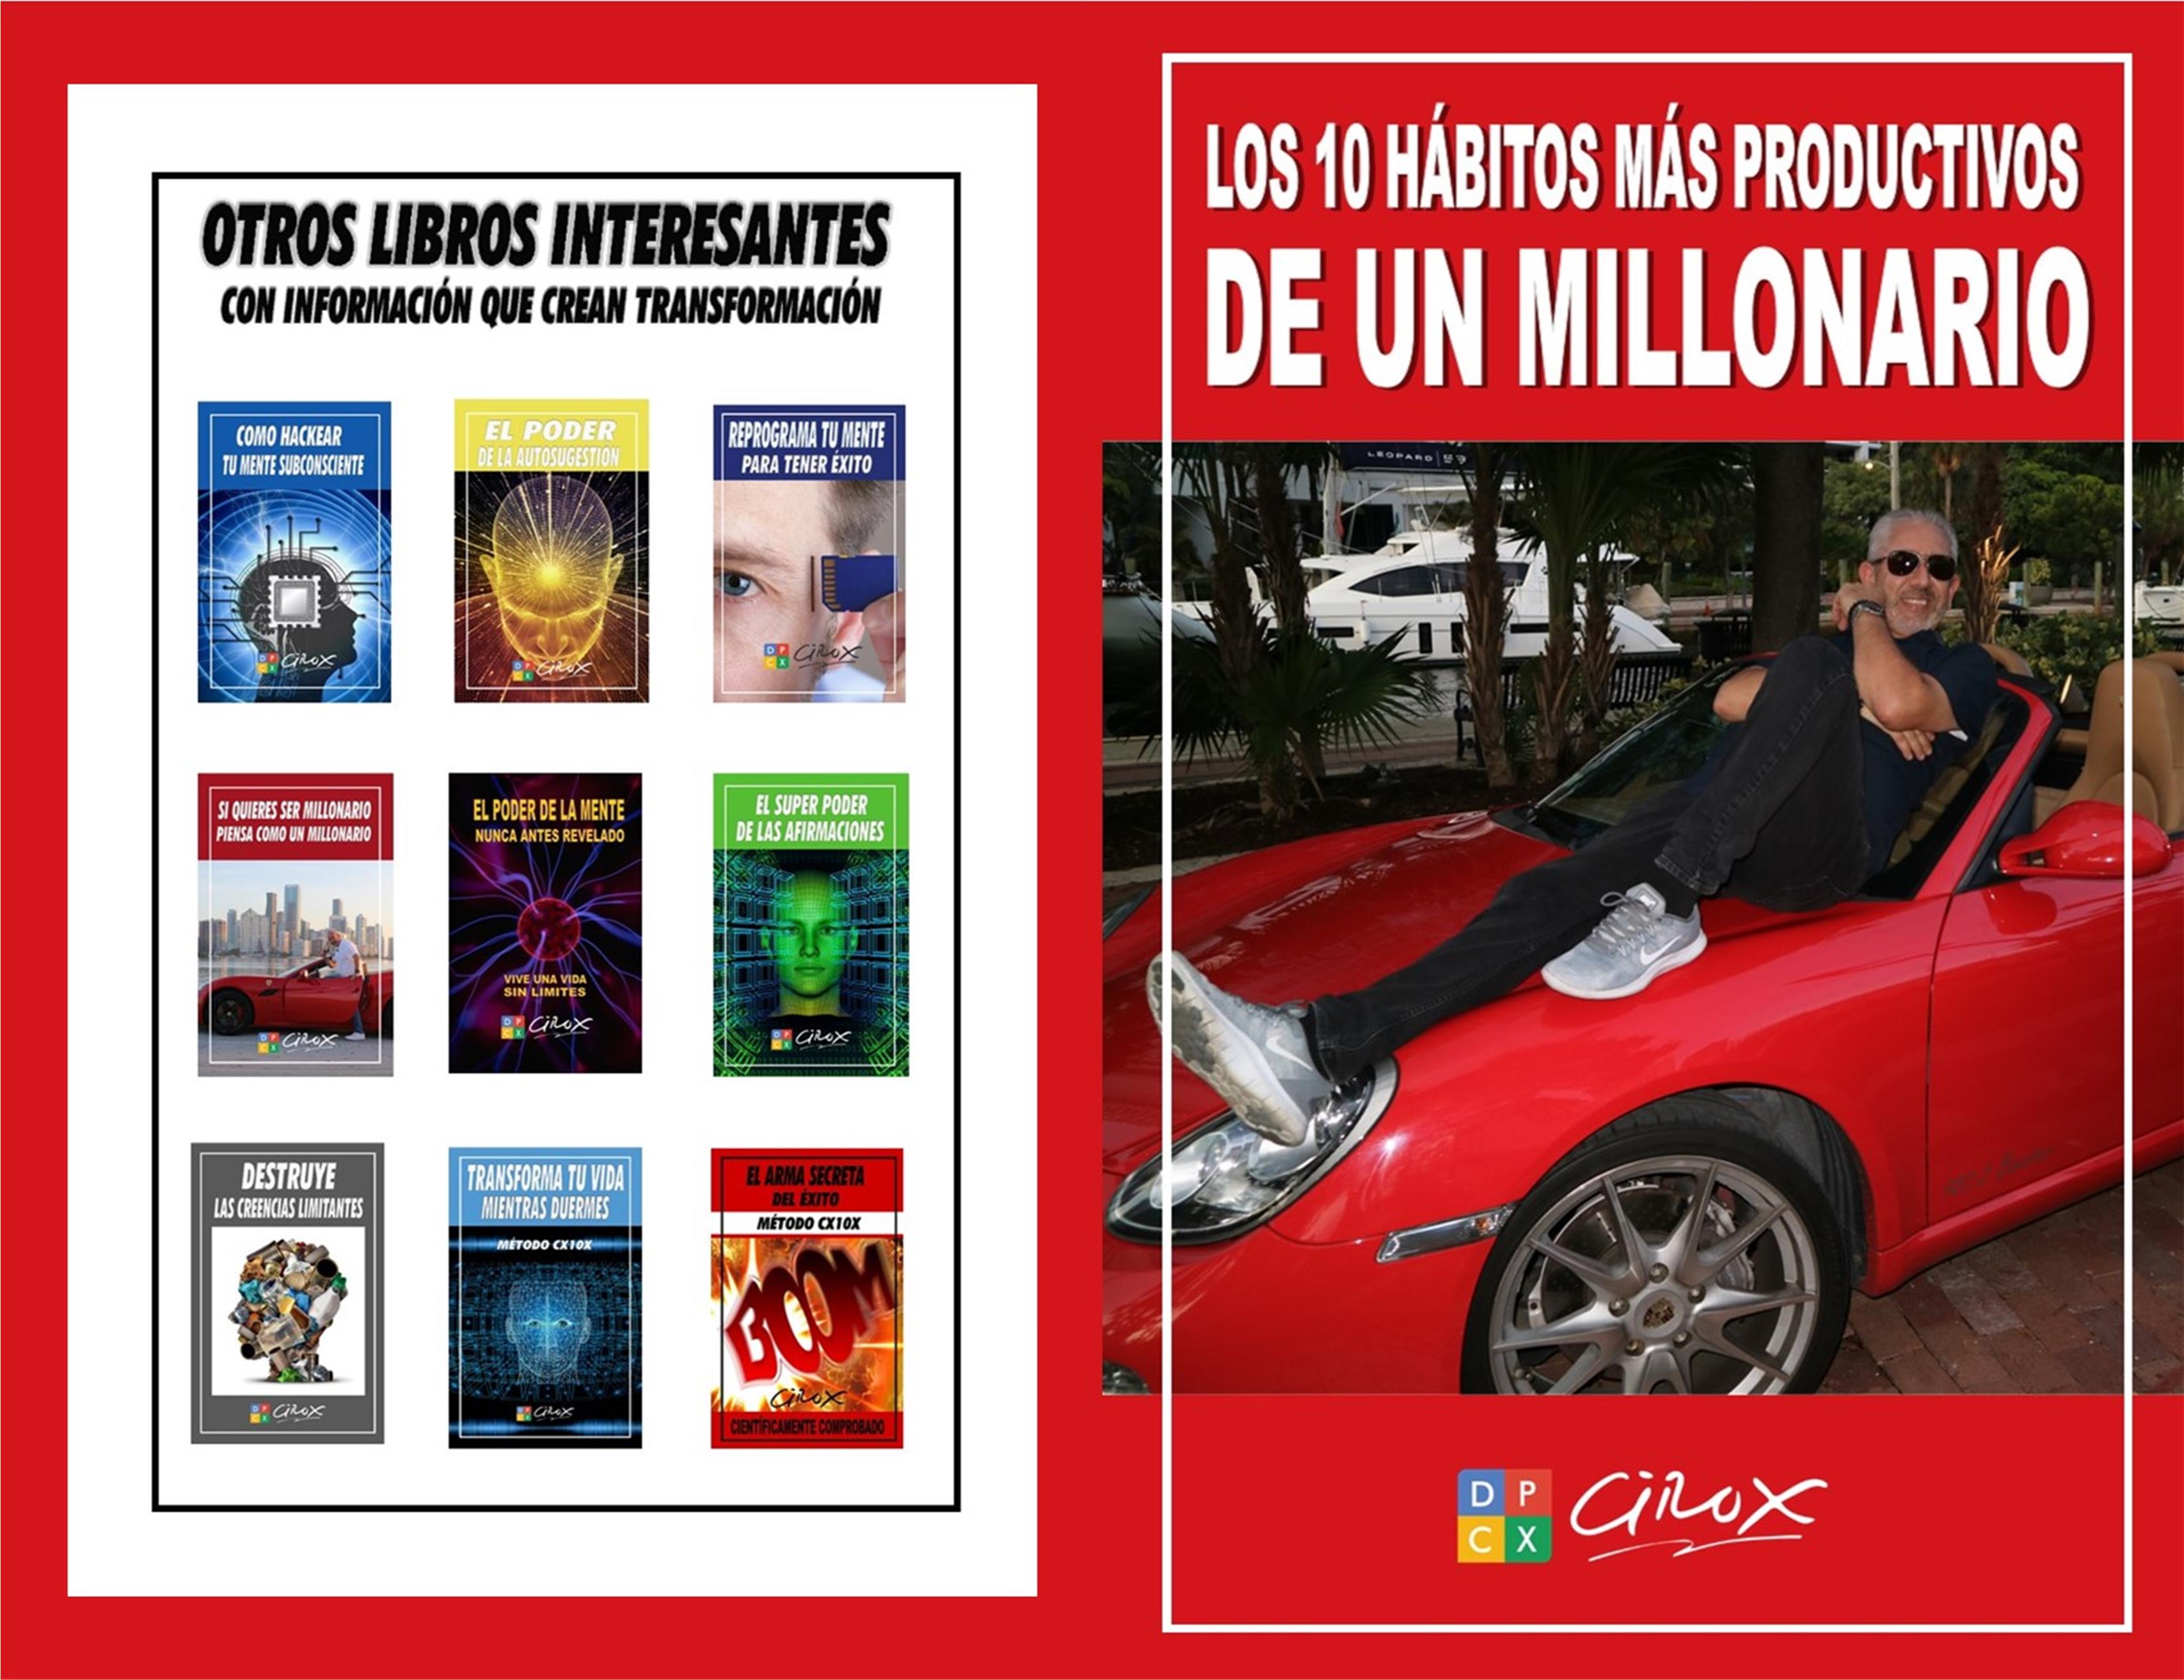 LOS 10 HÁBITOS MÁS PRODUCTIVOS DE UN MILLONARIO cover image